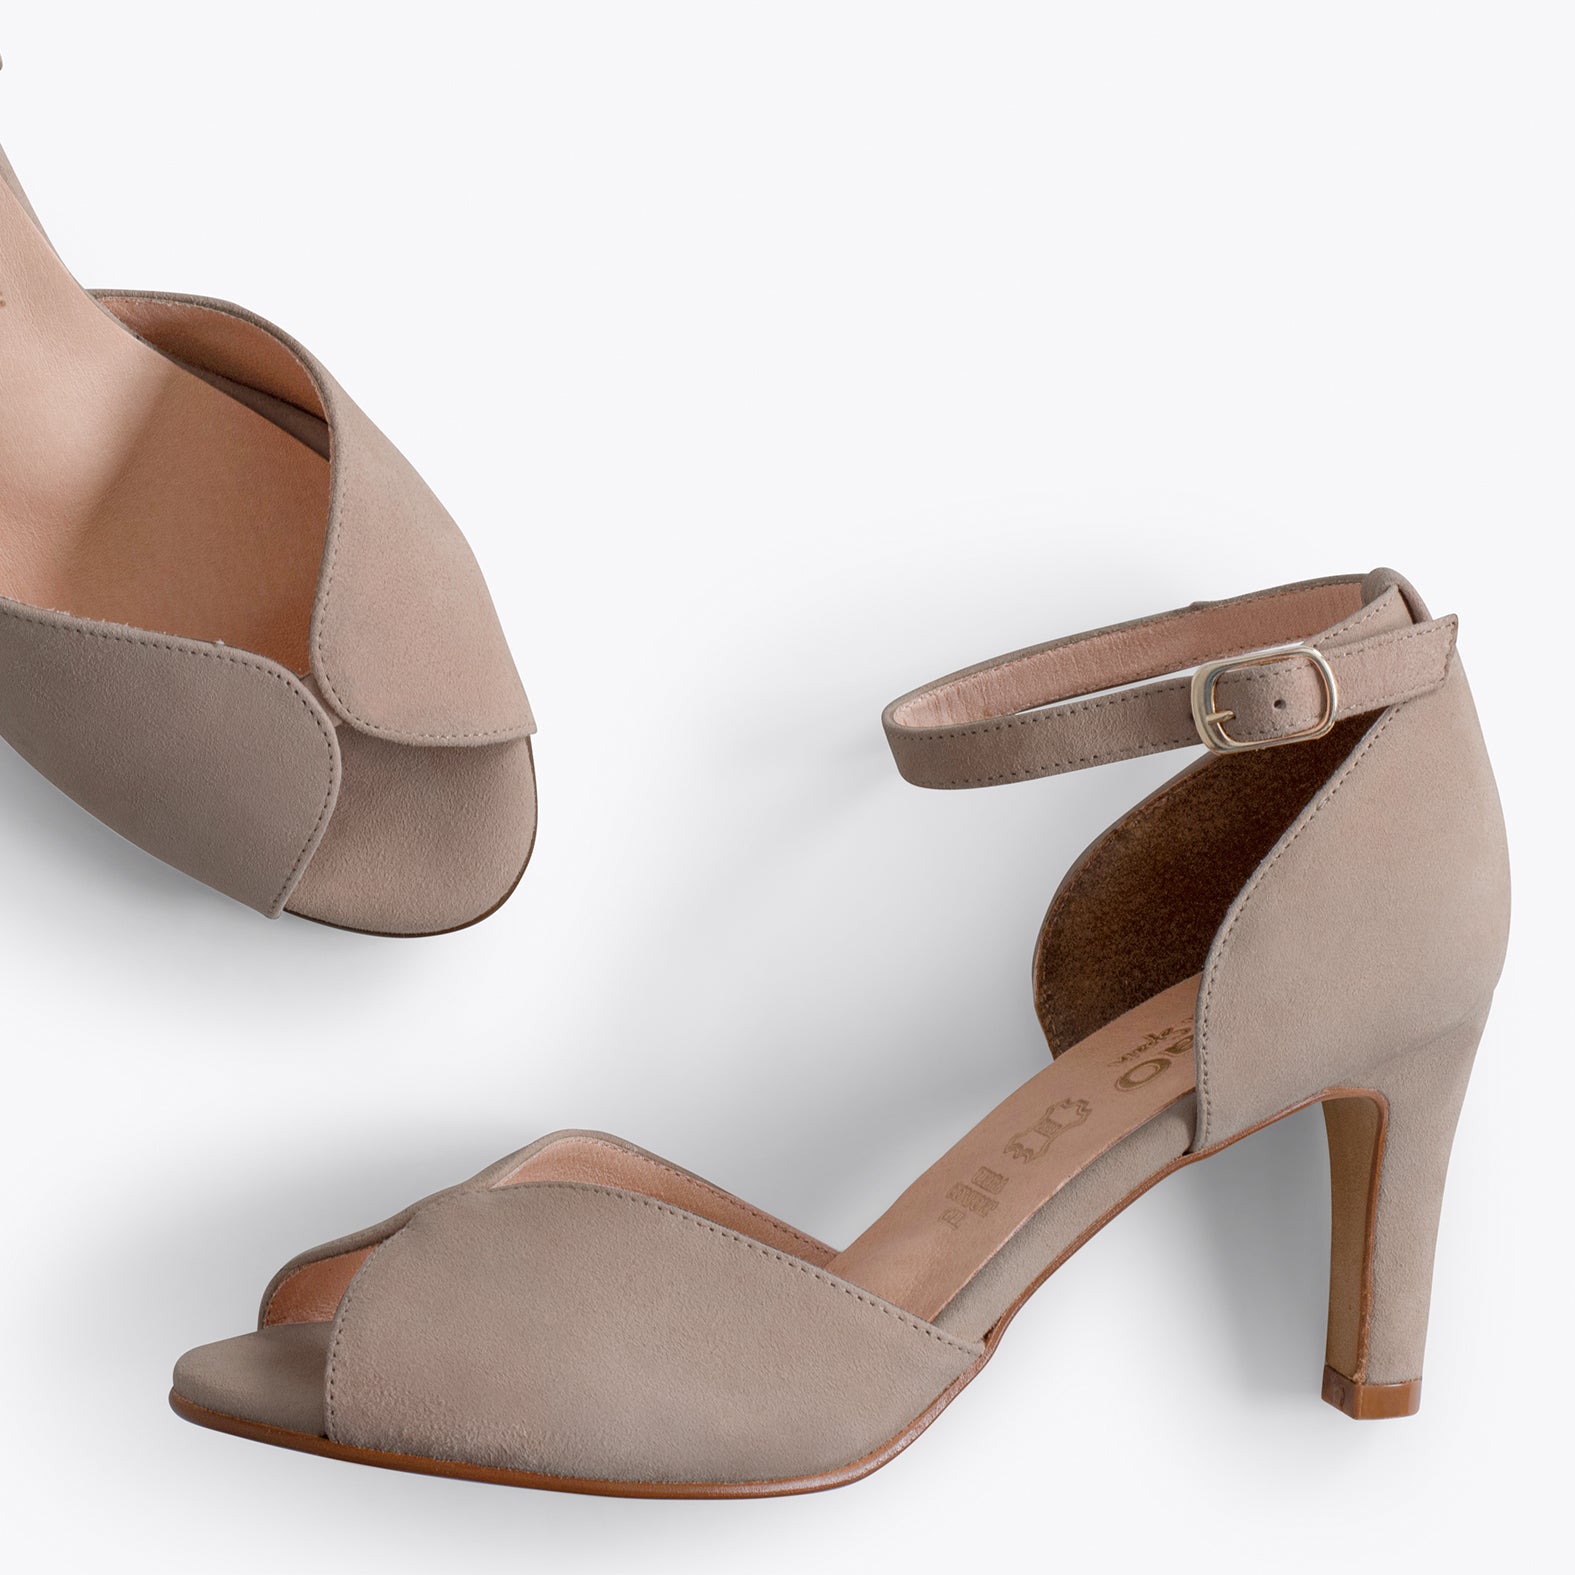 PETAL – TAUPE high heel sandal